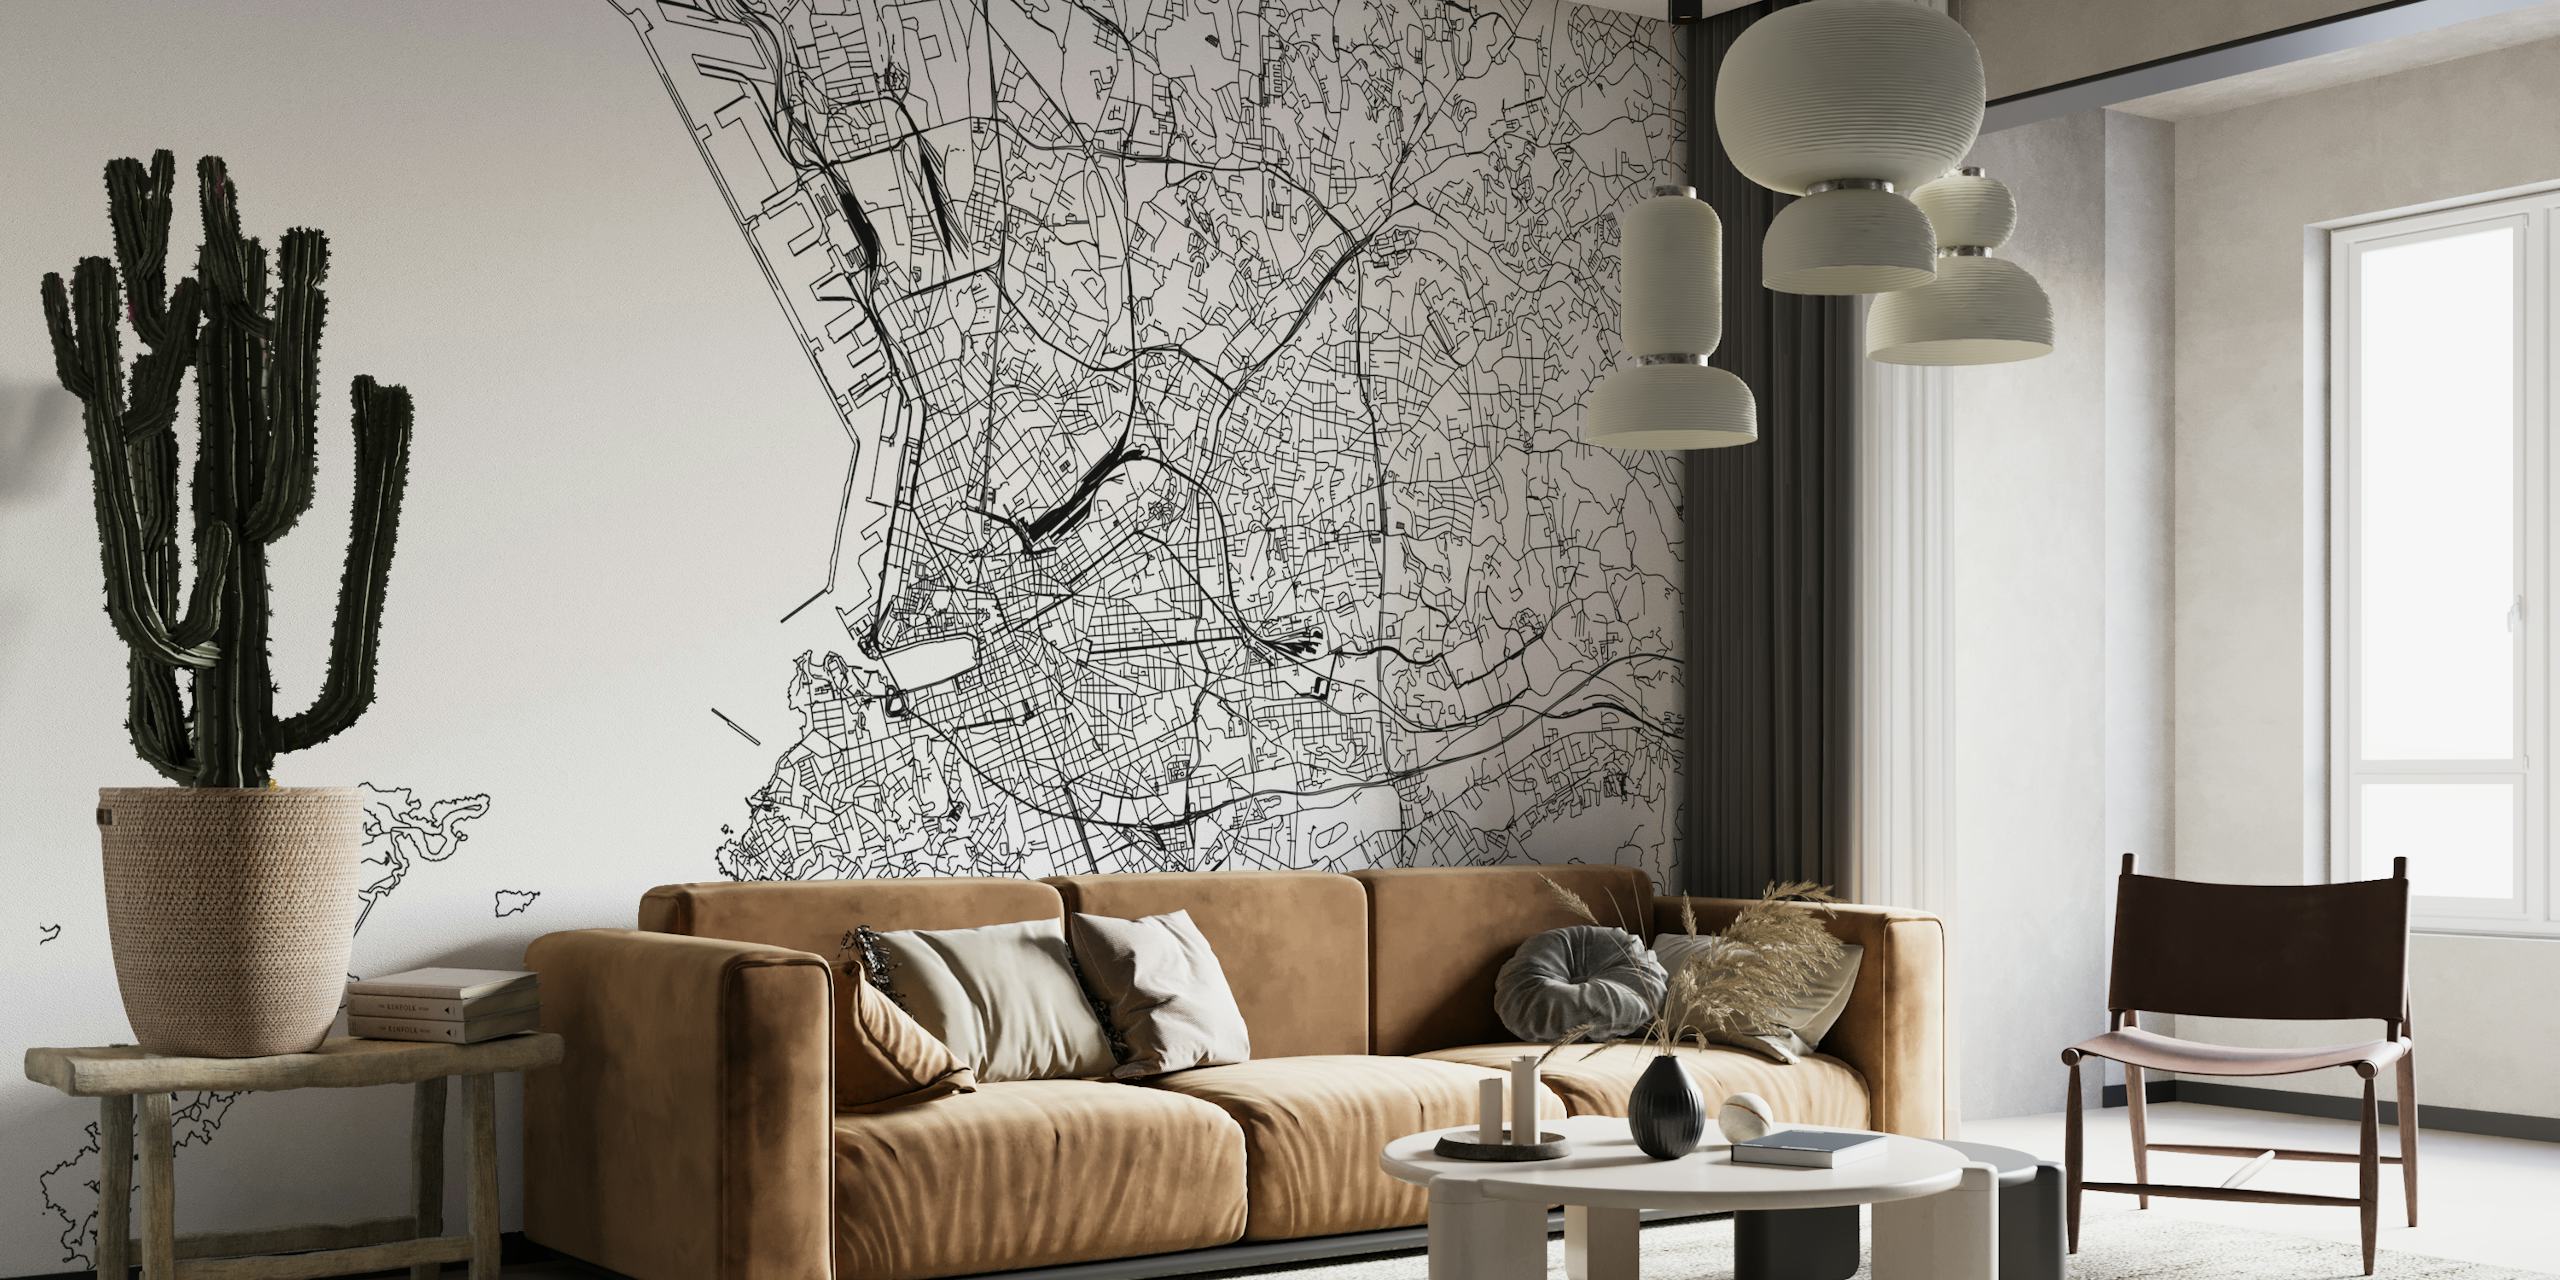 Mapa detalhado em preto e branco do mural de Marselha para decoração de interiores.